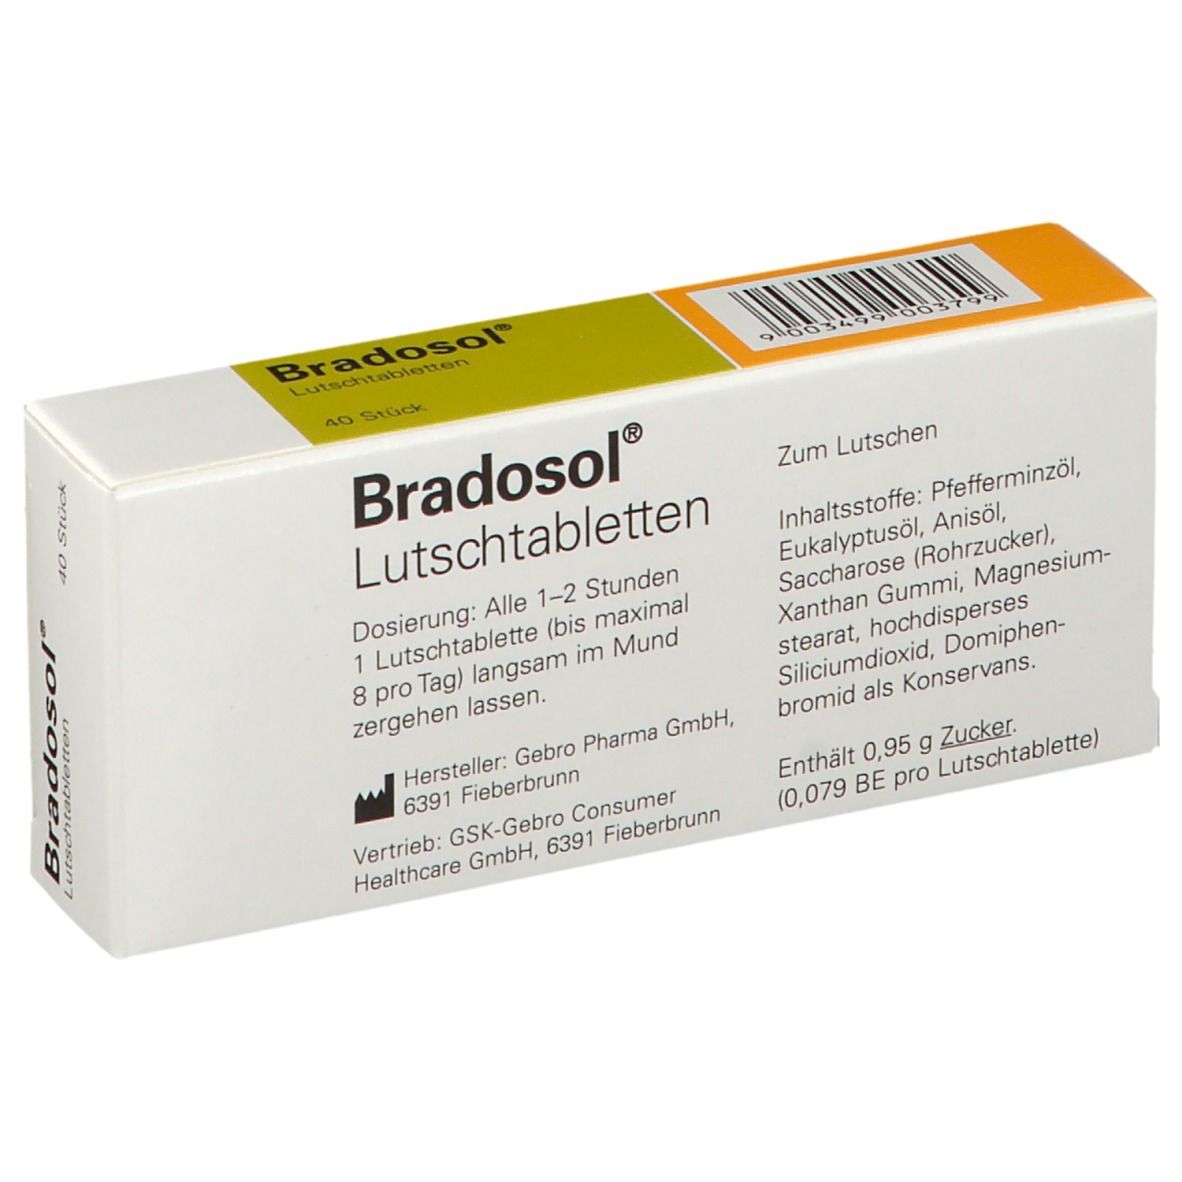 Bradosol® Lutschtabletten